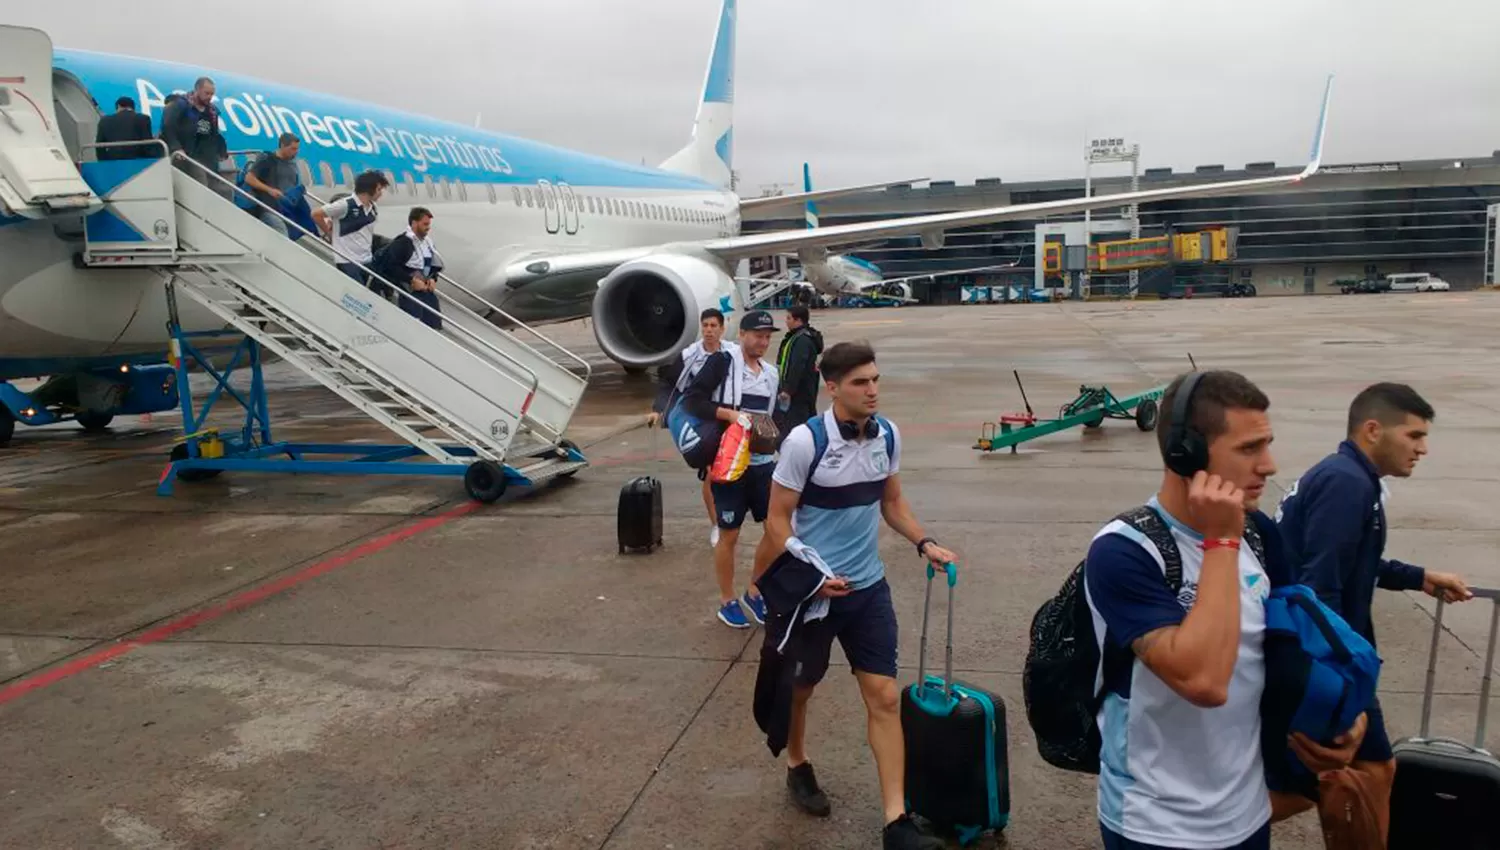 EN AEROPARQUE. Los jugadores bajan del avión. FOTO LA GACETA/ JUAN MANUEL ROVIRA